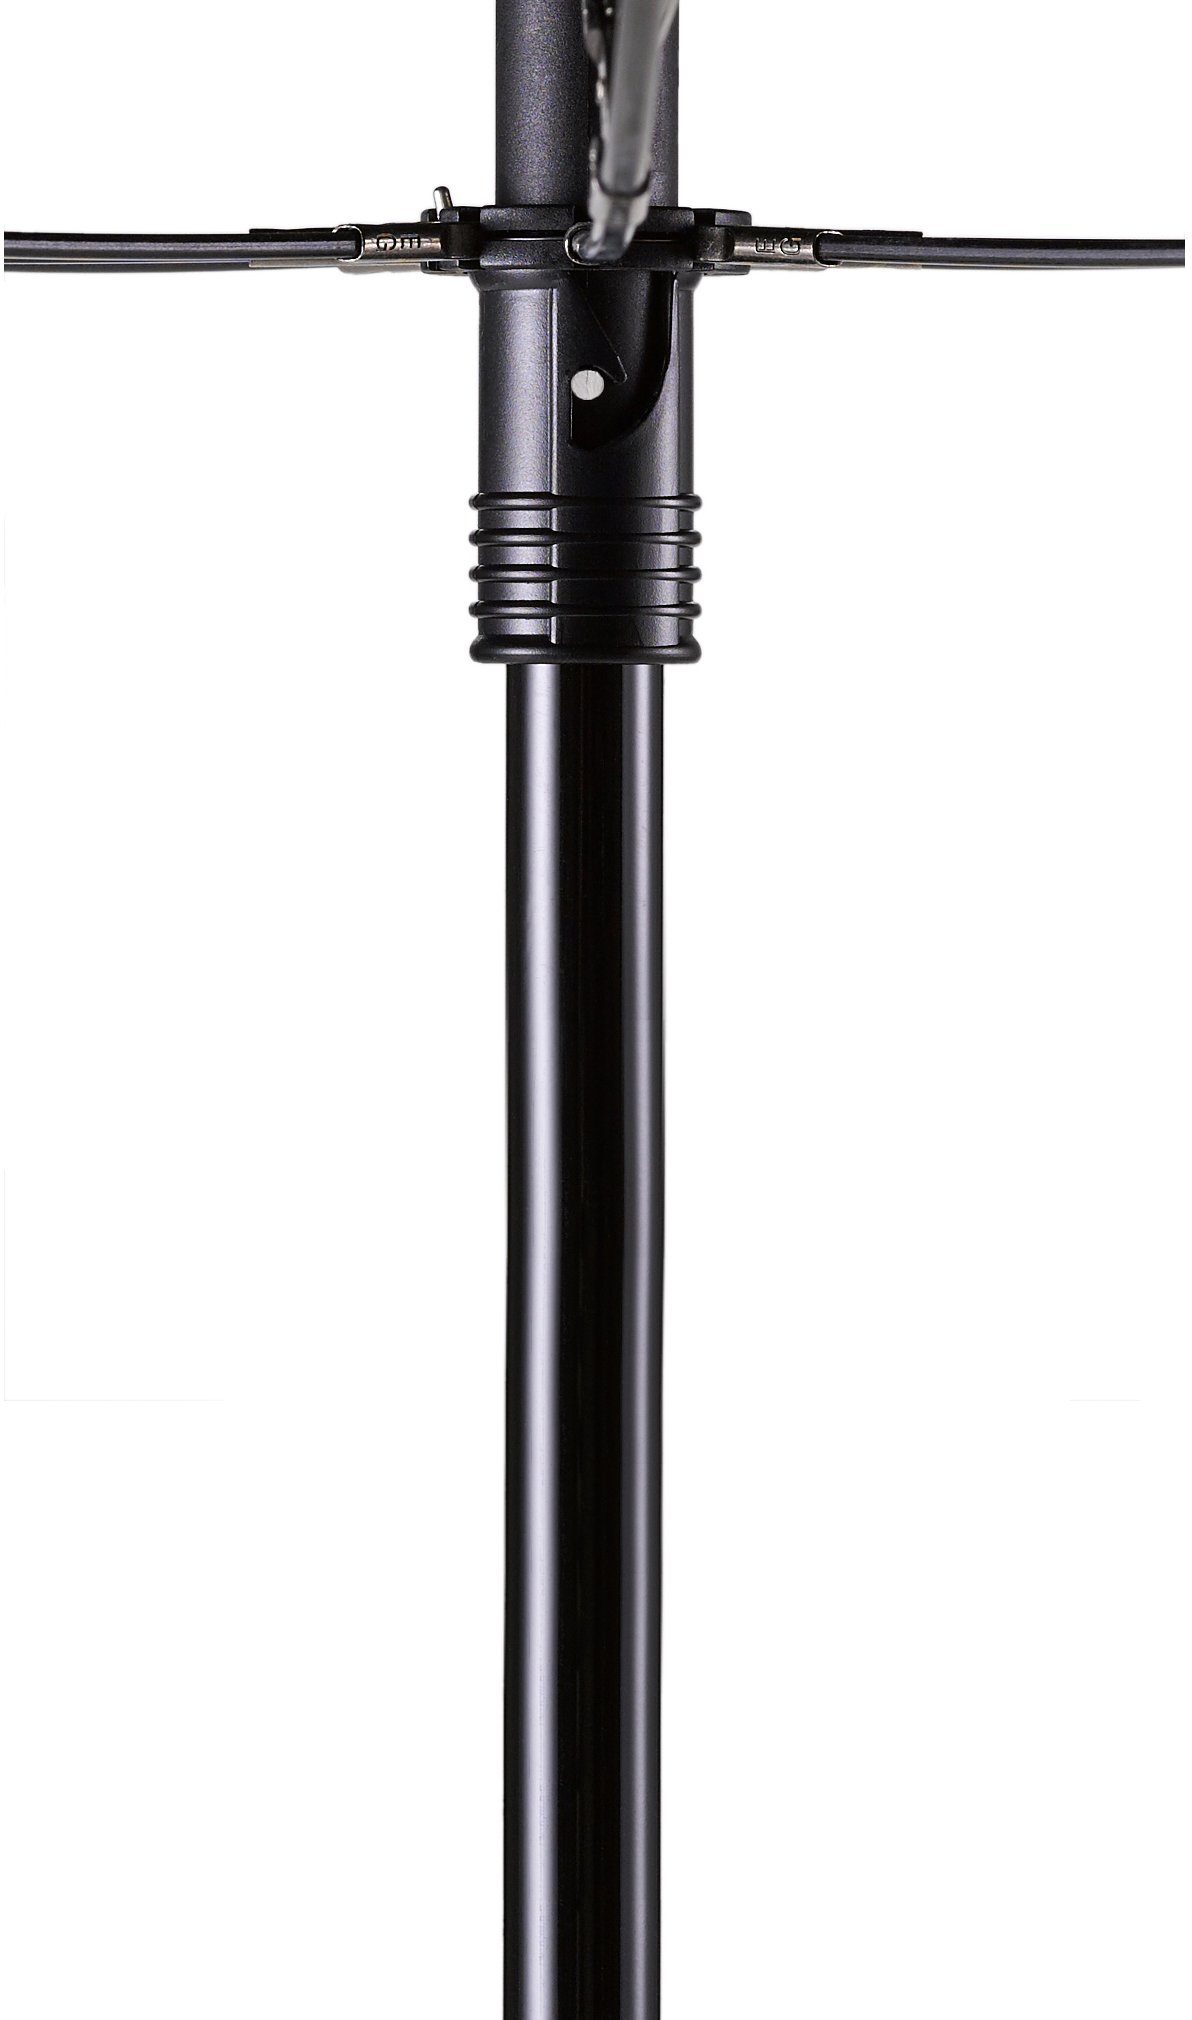 EuroSCHIRM® handfrei teleScope handsfree, Taschenregenschirm schwarz, tragbar